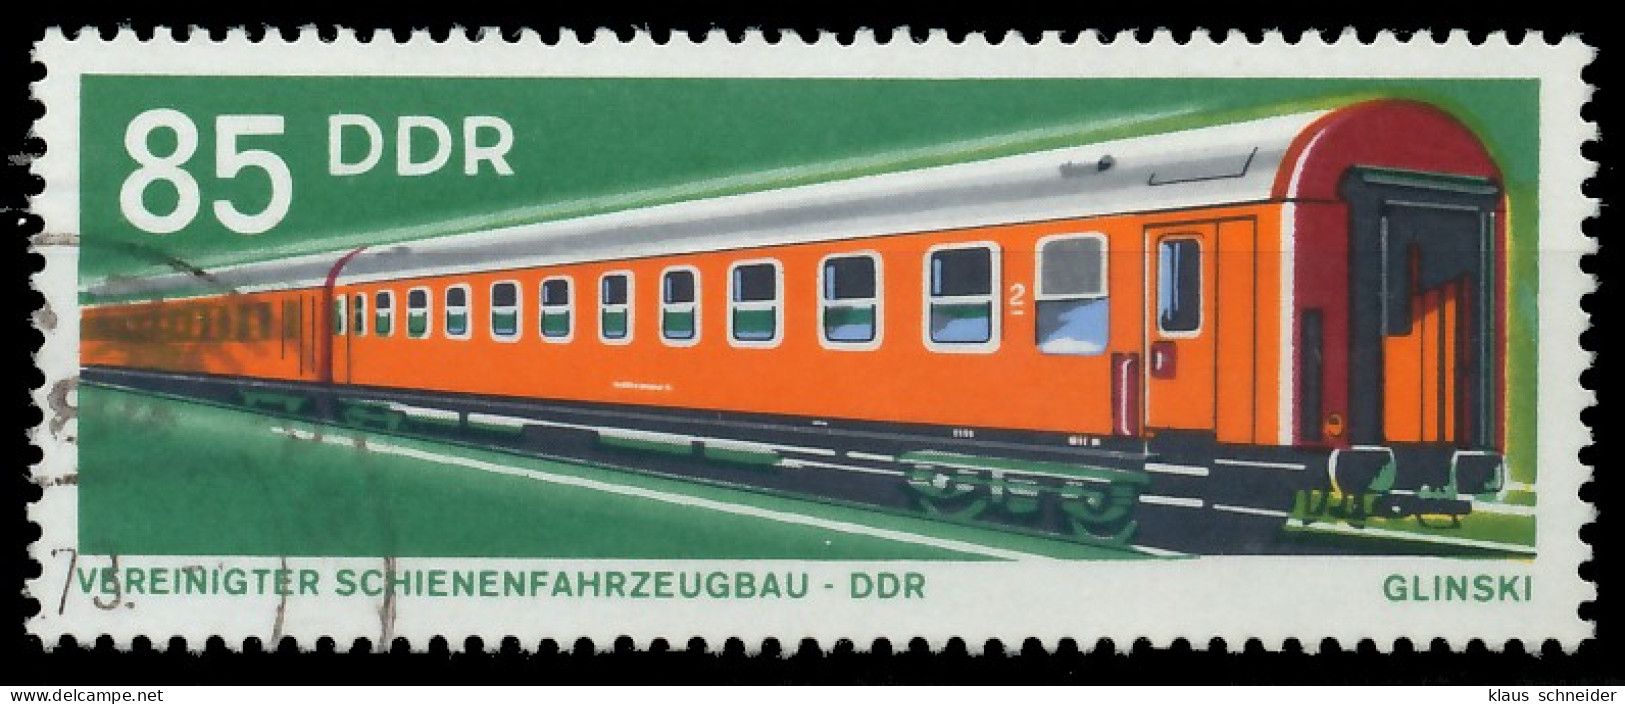 DDR 1973 Nr 1849 Gestempelt X40BBF2 - Oblitérés